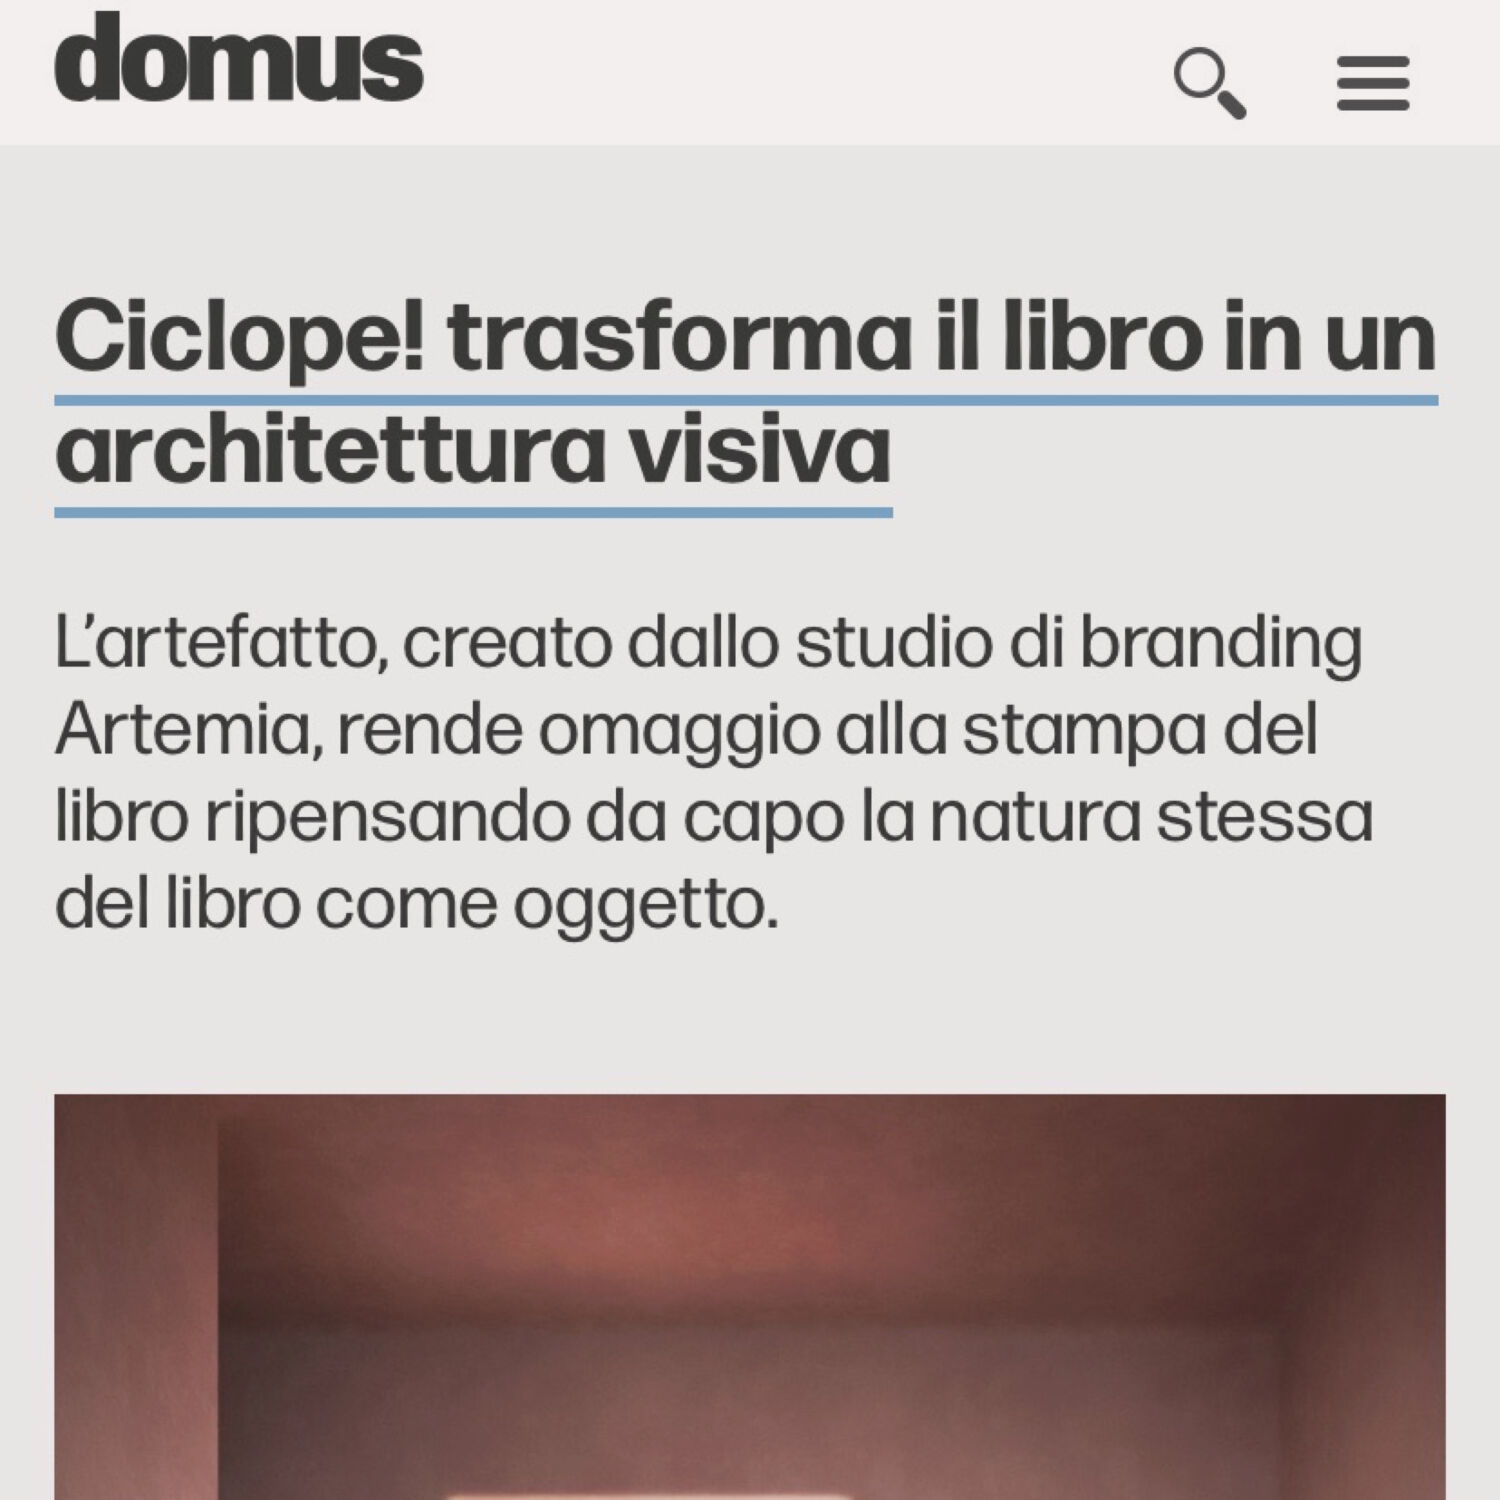 Domus pubblica articolo su Ciclope! di Bottega Artemia Tommaso Gentile